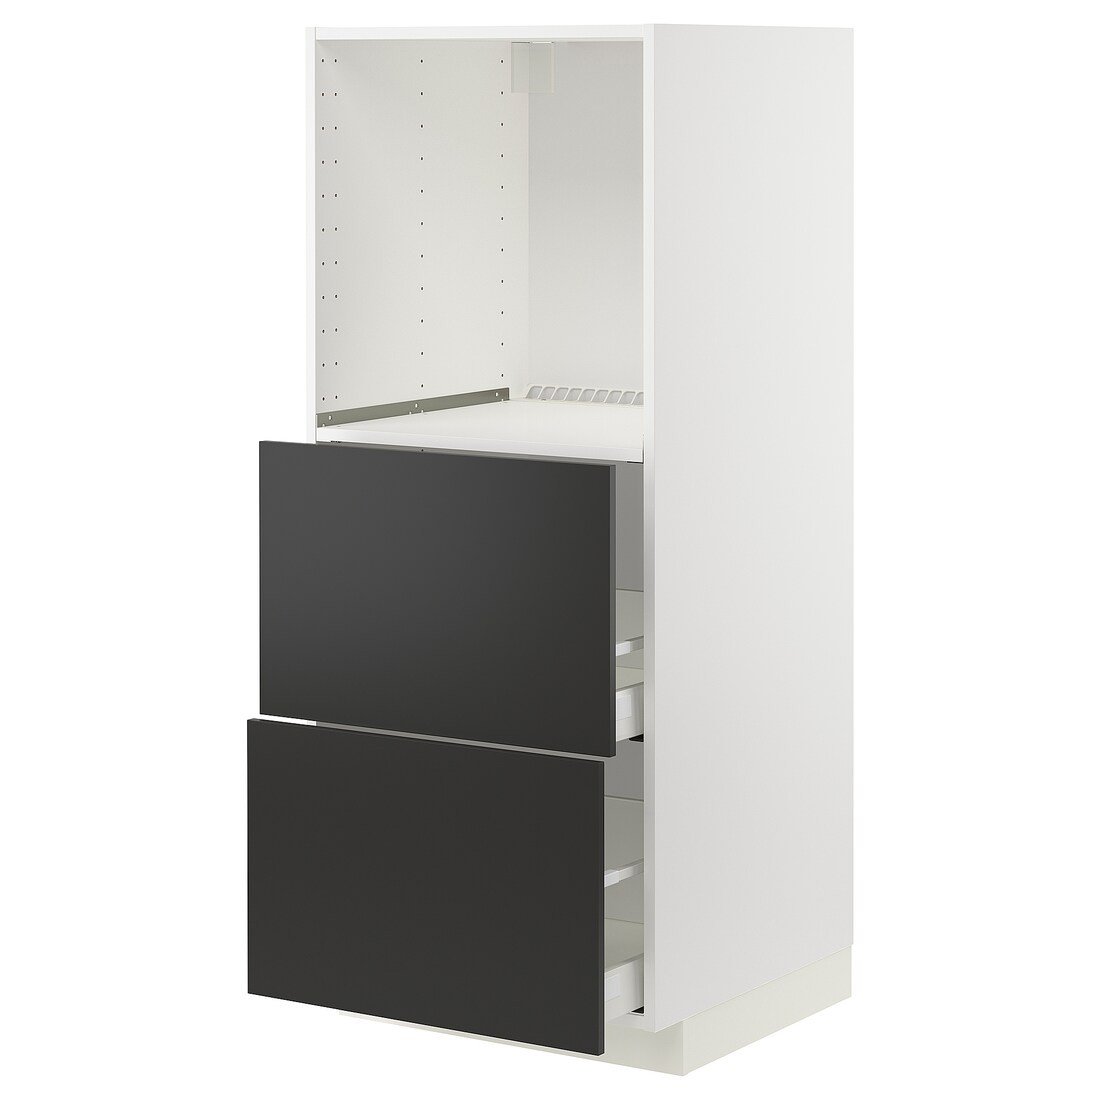 METOD МЕТОД / MAXIMERA МАКСИМЕРА Высокий шкаф с 2 ящиками для духовки, белый / Nickebo матовый антрацит, 60x60x140 см